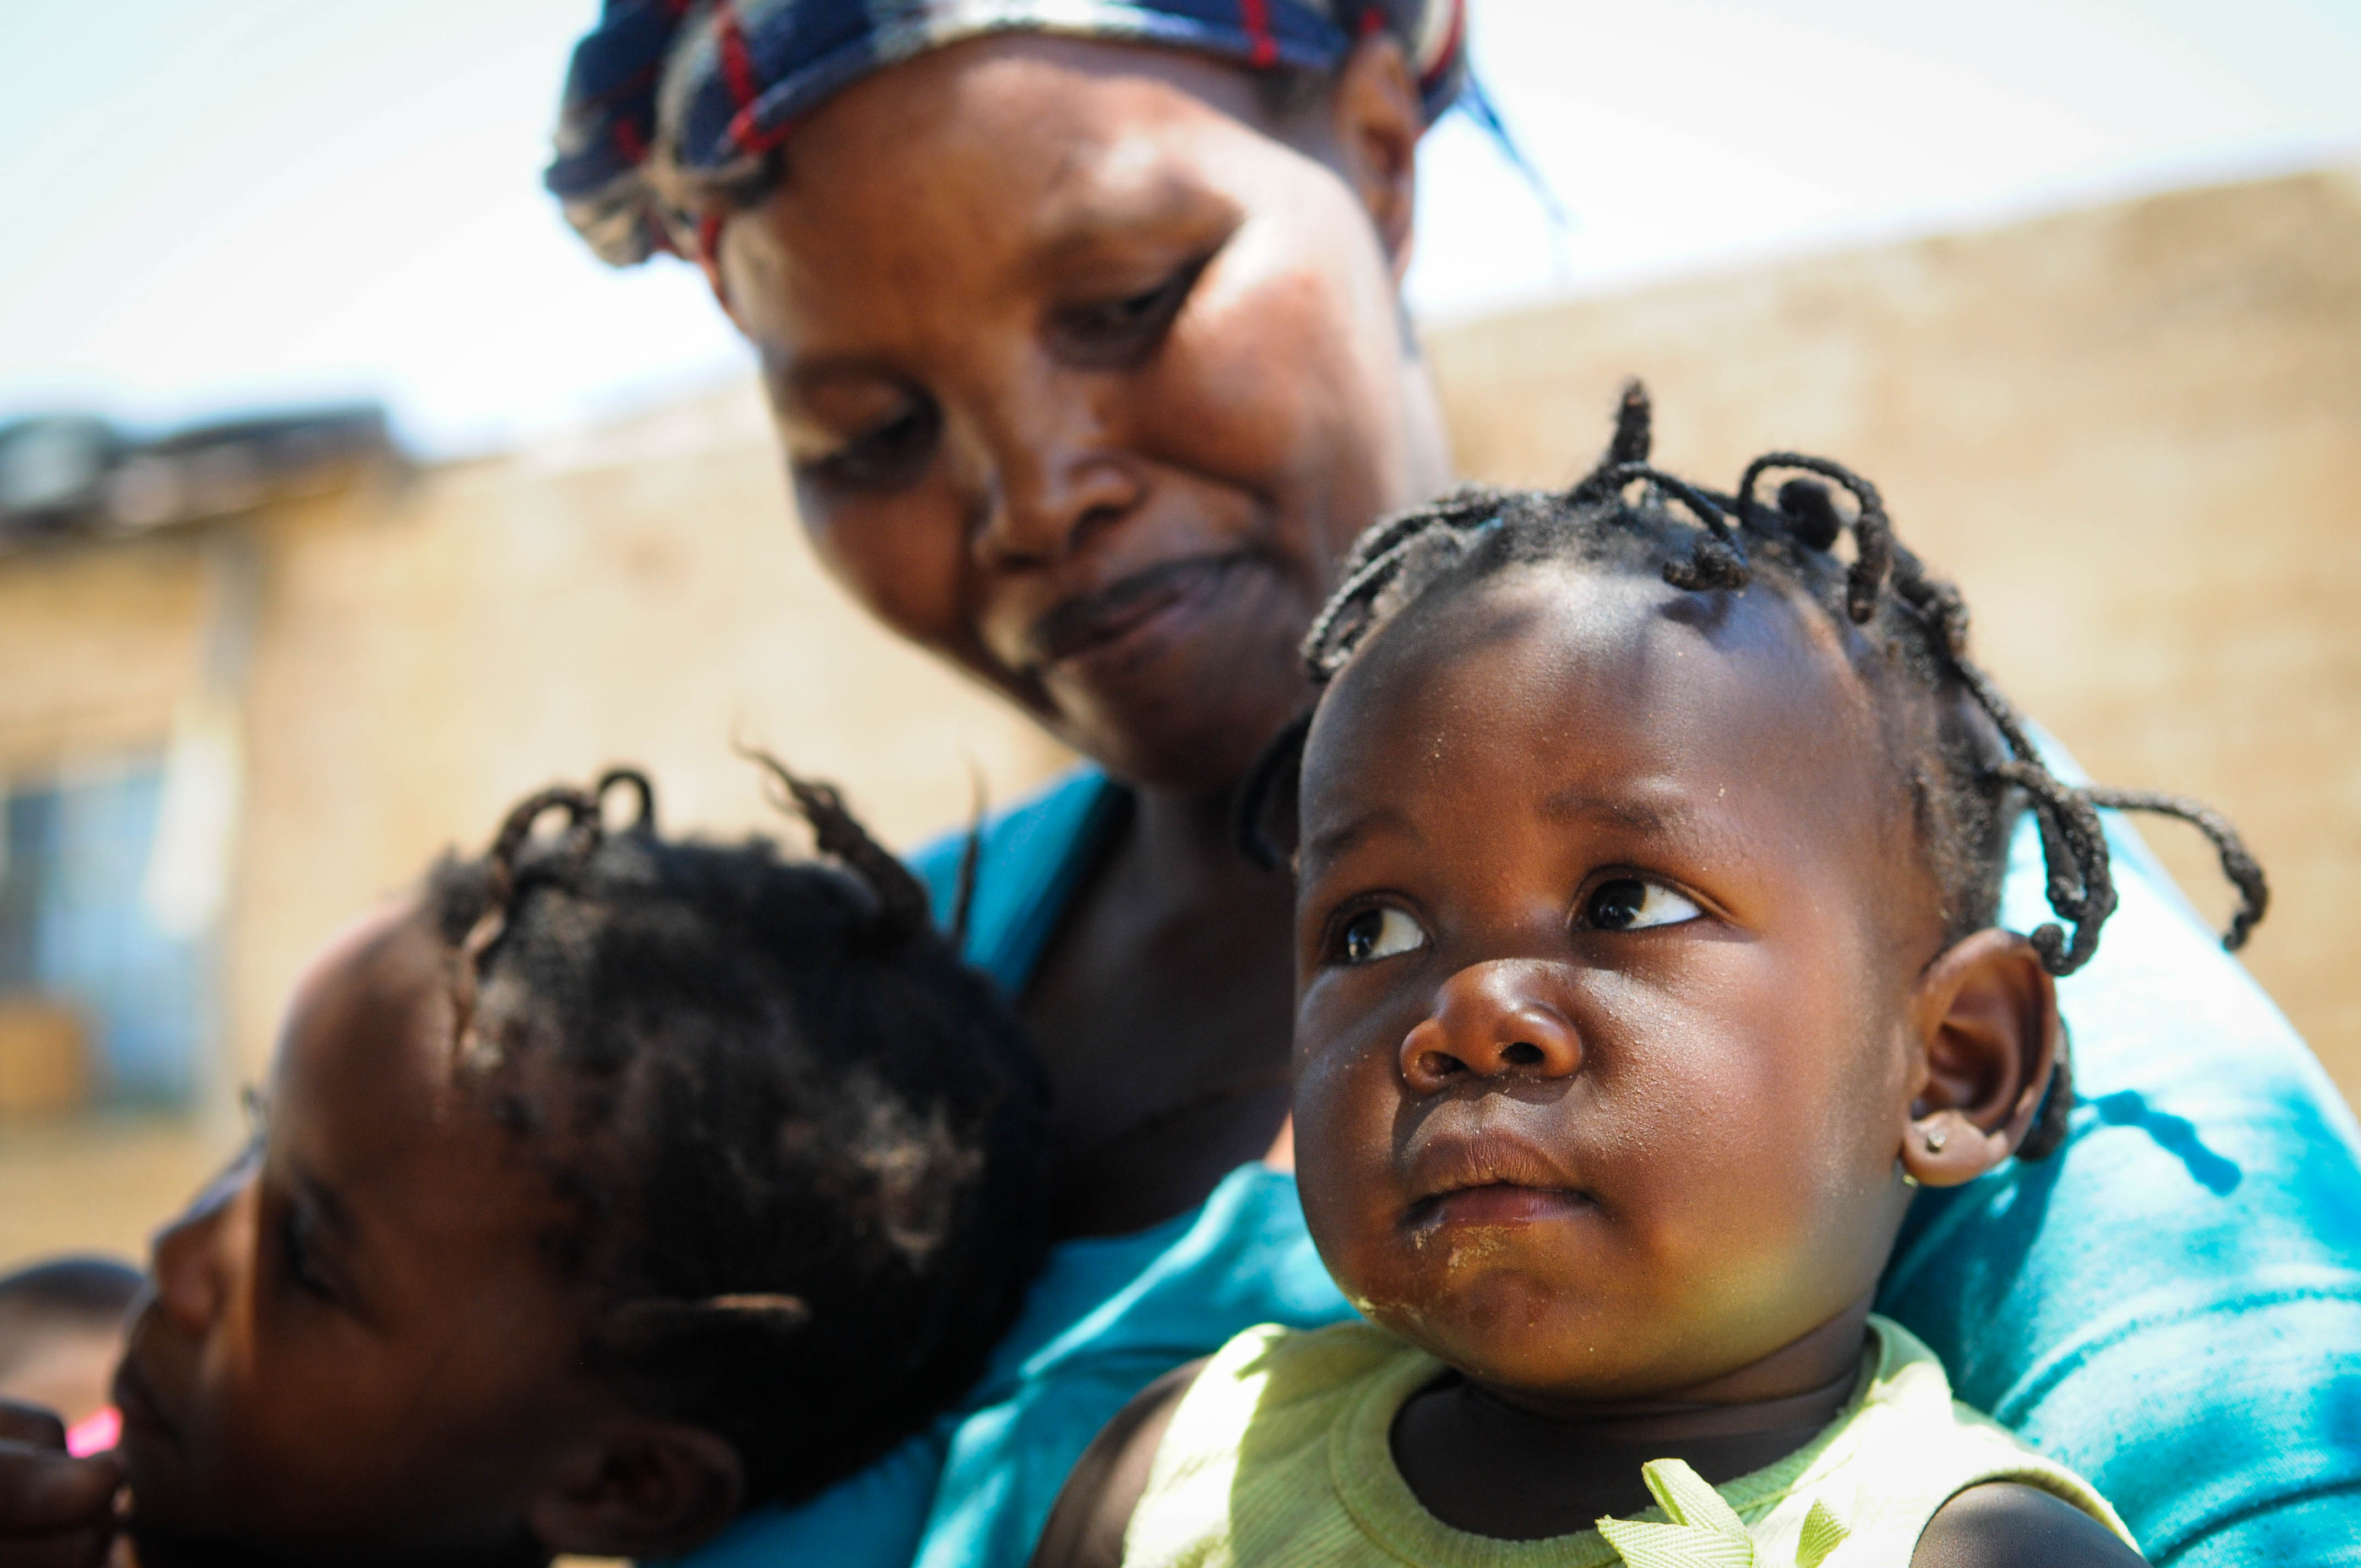 Frau in Afrika mit zwei Kindern. Sie nimmt an einer Selbsthilfegruppe teil